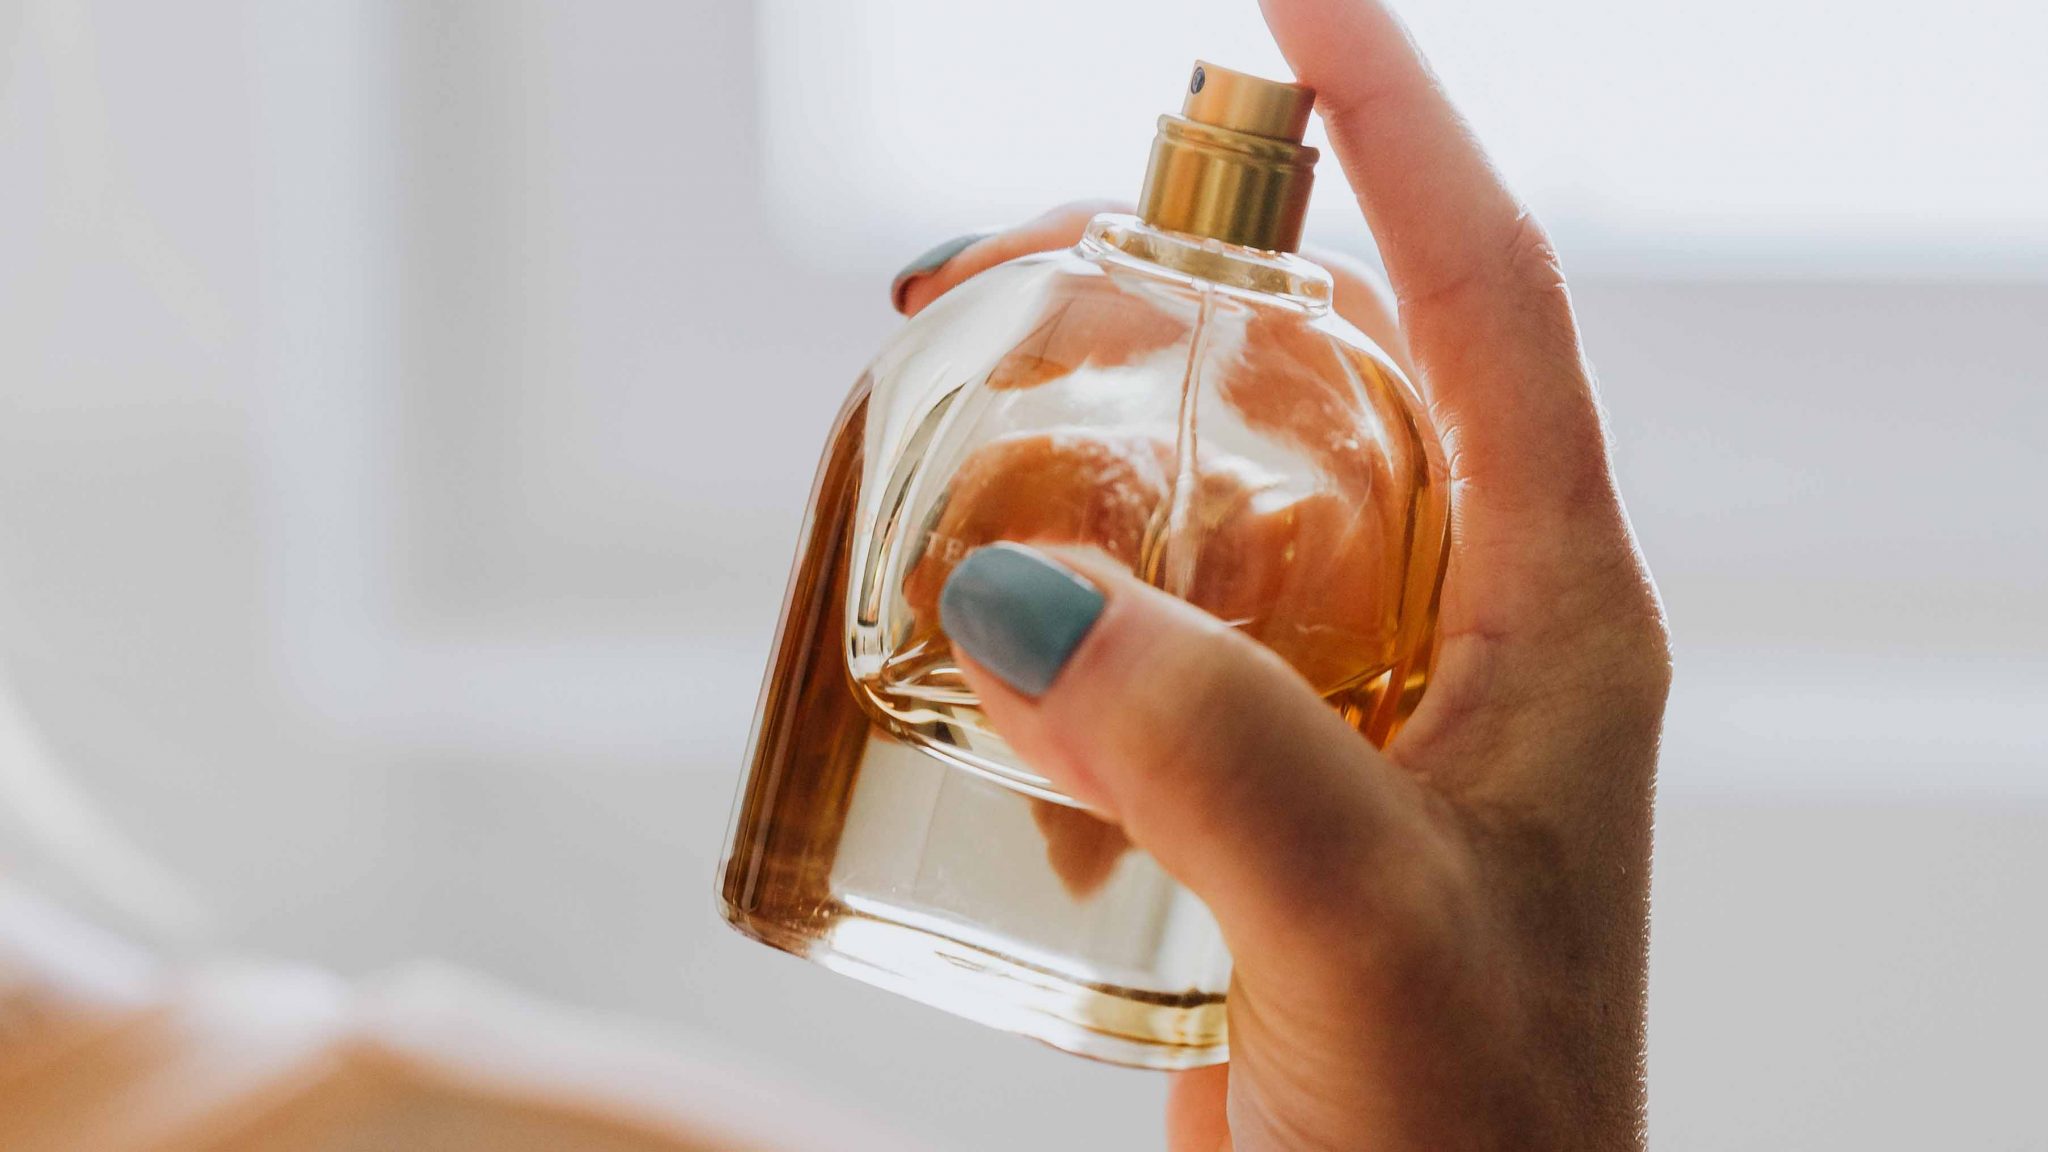 Los 10 perfumes de Zara inspirados en firmas conocidas que están arrasando (y no cuestan más de 20 euros)